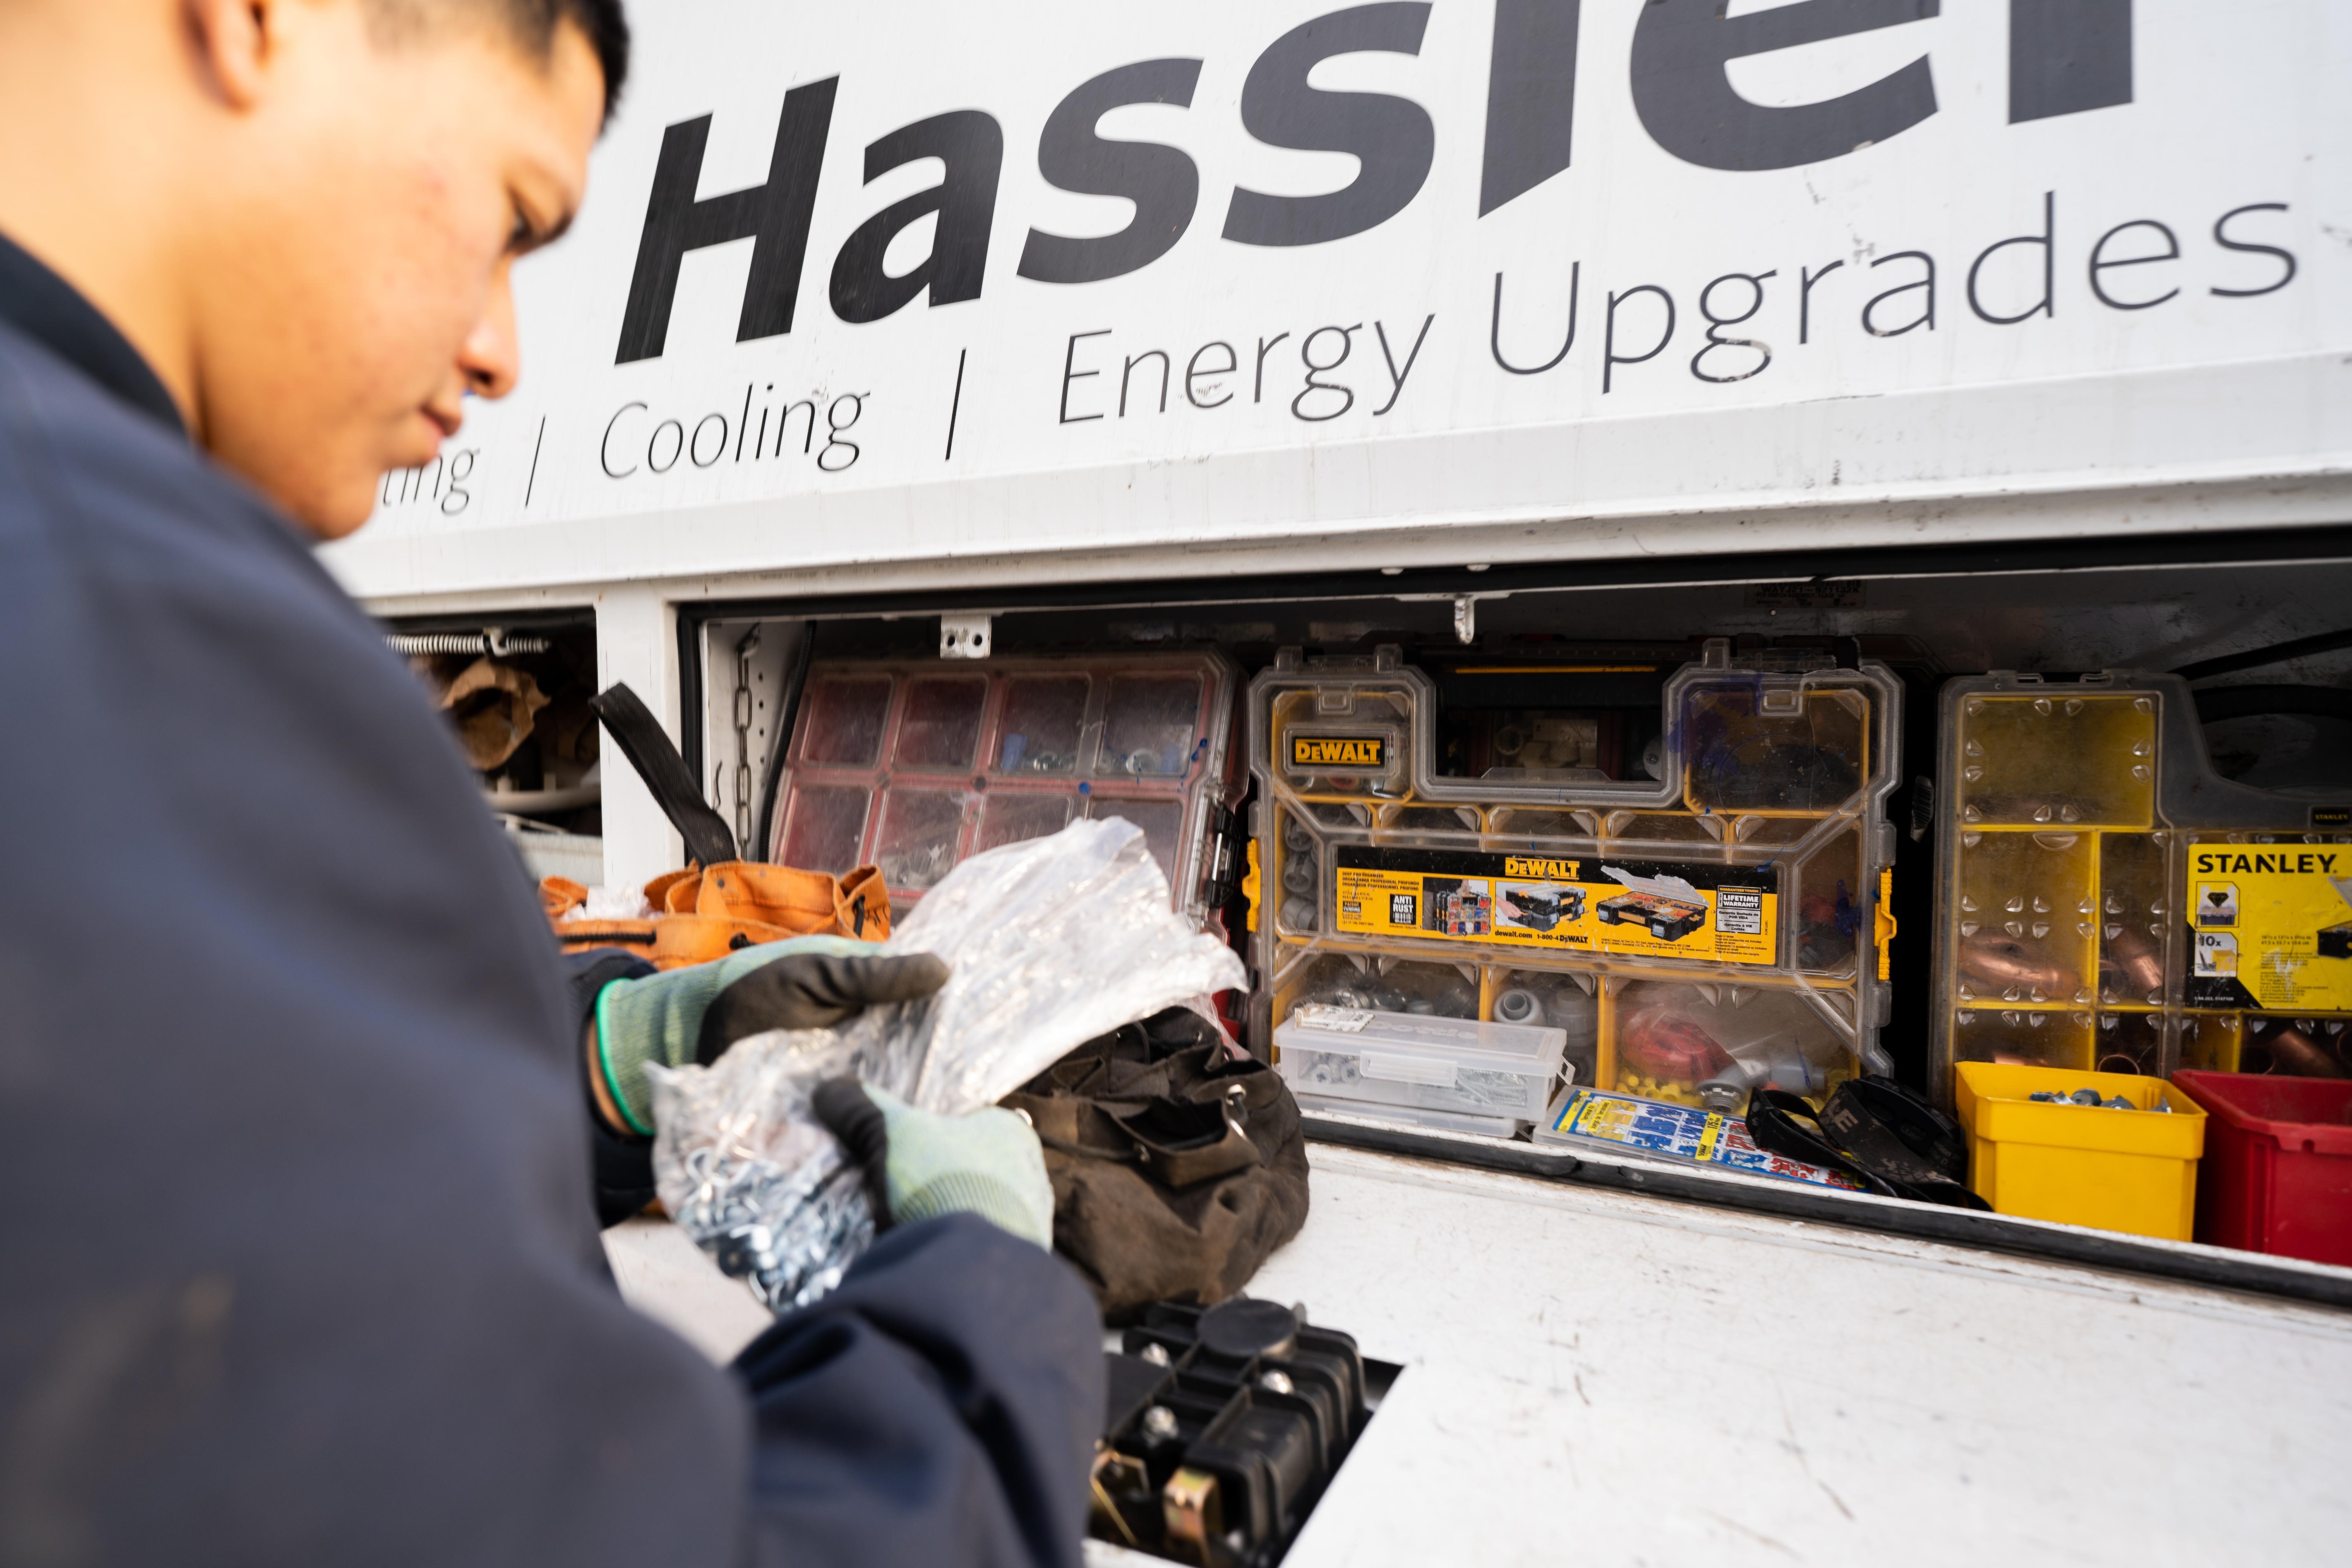 Hassler tech working inside a truck